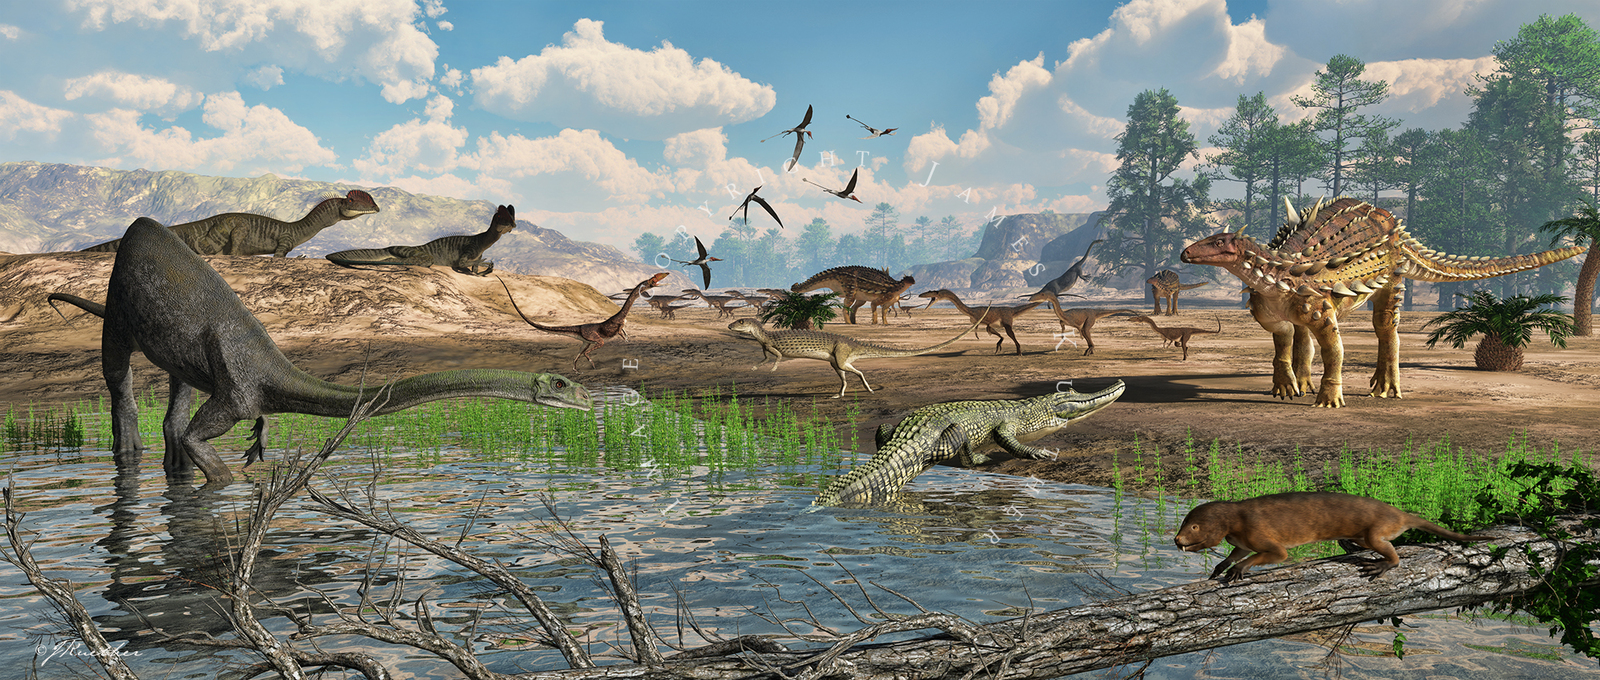 Динозавры мезозой Юрский период